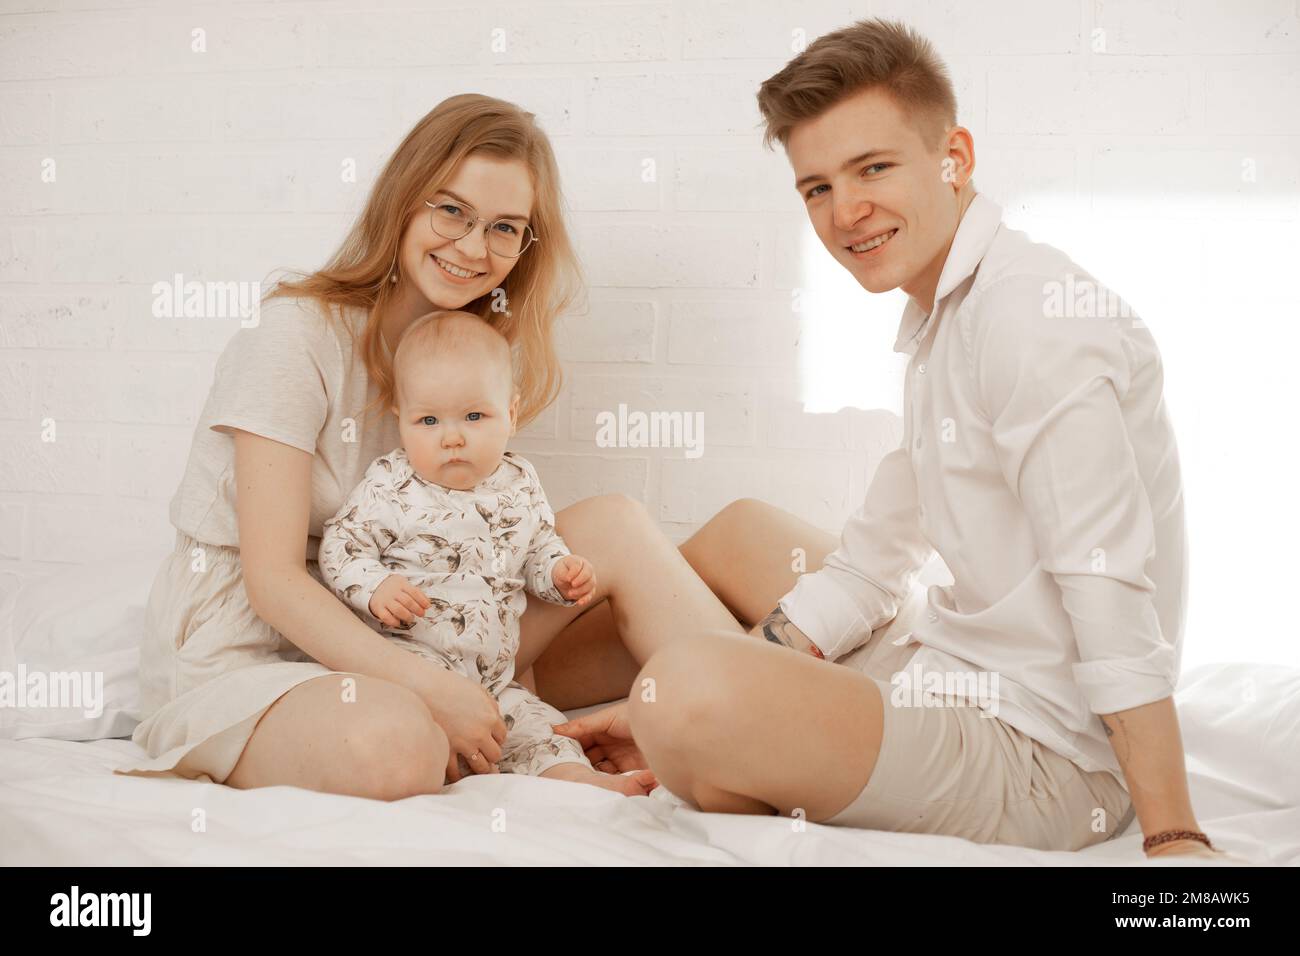 Retrato de familia feliz de tres sobre fondo blanco. Madre, padre y bebé bebé se sientan en la cama y abrazan. Foto de pareja joven y niño en blanco Foto de stock